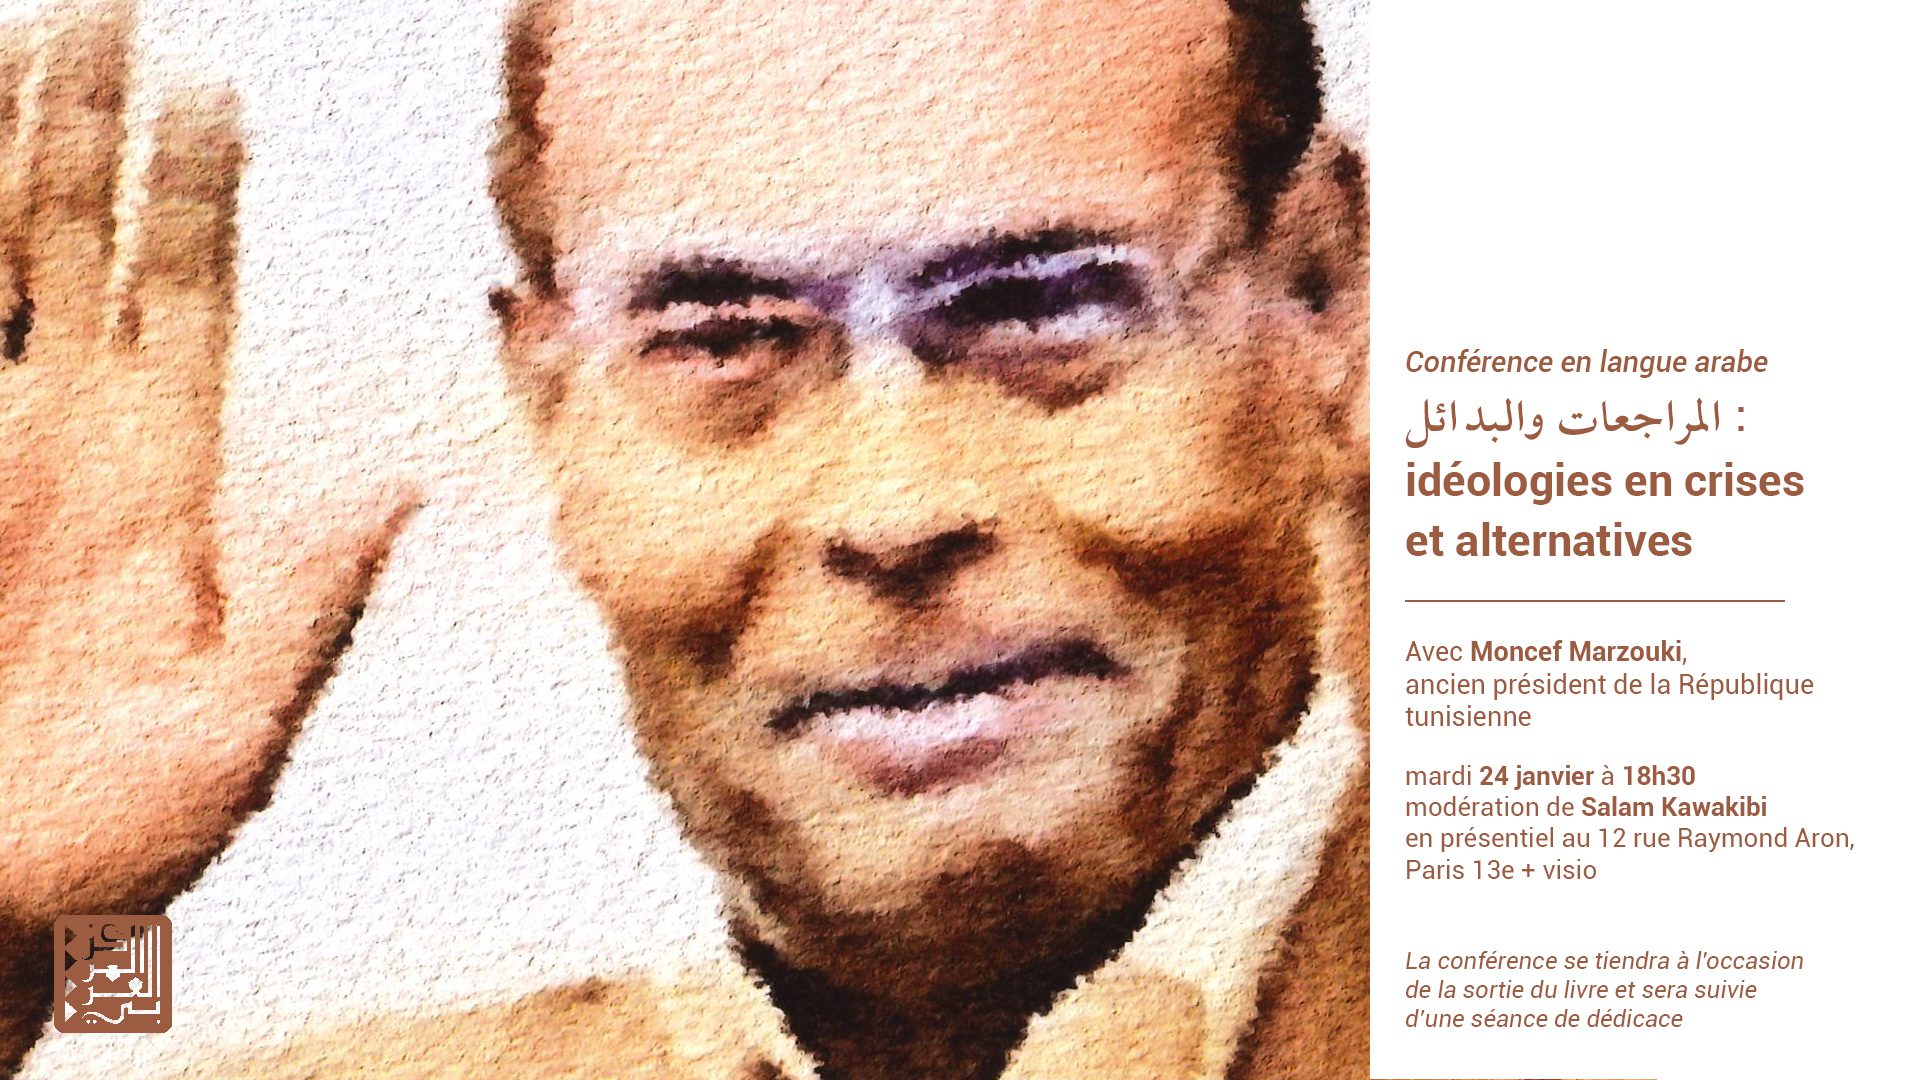 Visuel conférence sur le livre de Moncef Marzouki